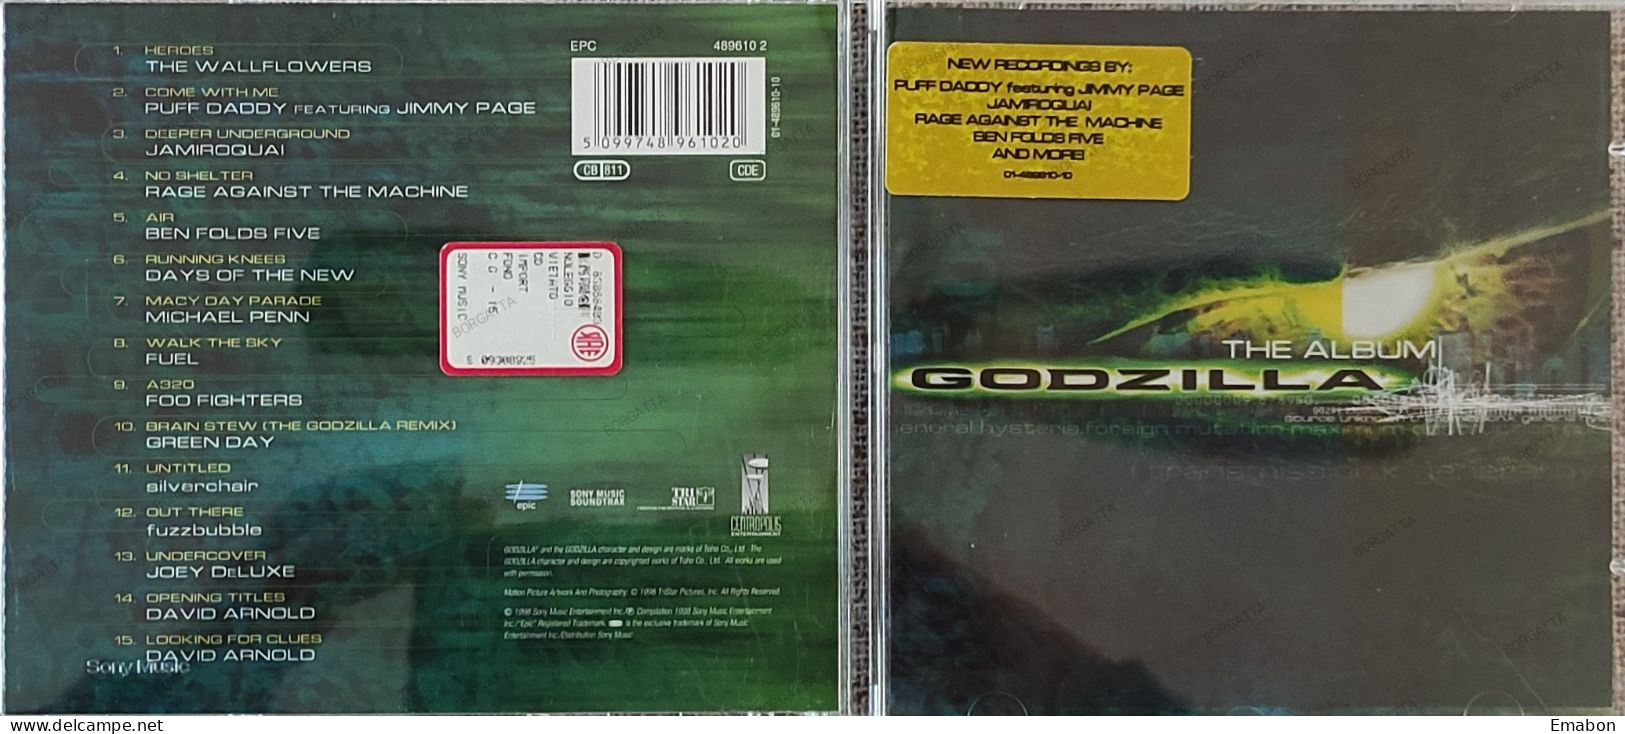 BORGATTA - FILM MUSIC  - Cd   THE ALBUM GODZILLA - EPIC/SONY 1998- USATO In Buono Stato - Filmmusik